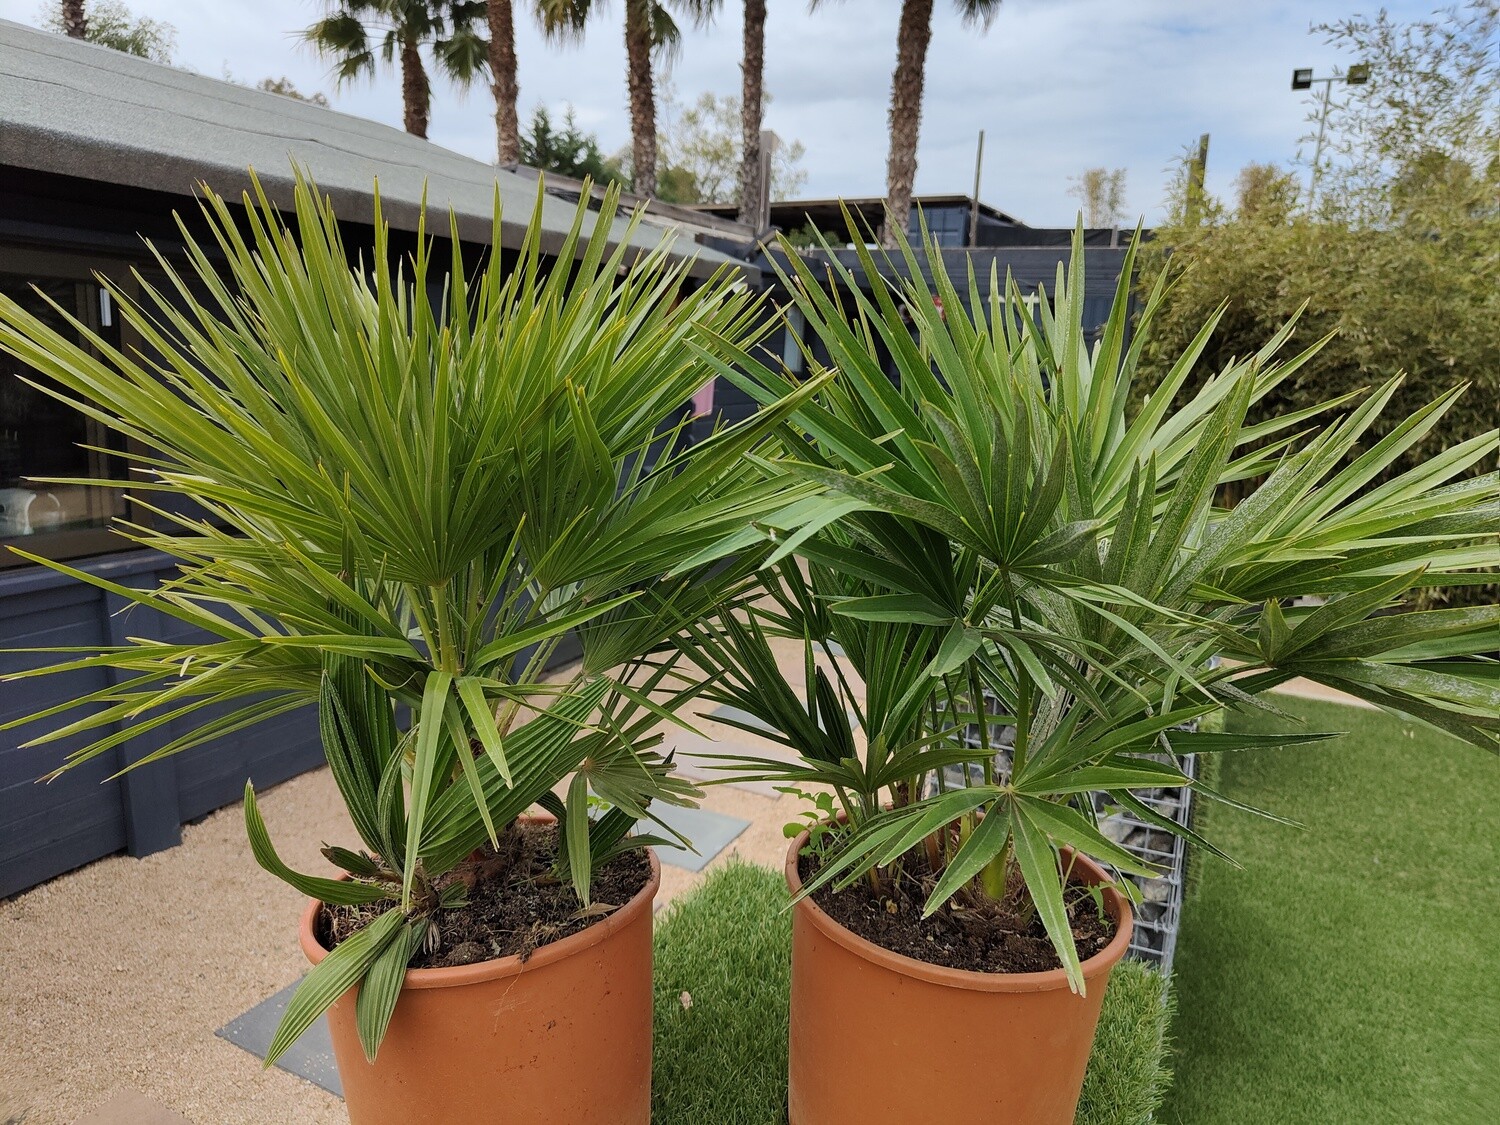 "AmaPlant Palmito" Palmera enana Chamaerops Humilis Vulcano, una pequeña palmera compacta de poco crecimiento con hojas en forma de abanico 50-60 cm M25 10 L (espontanea) - Exterior - ENVIO INCLUIDO